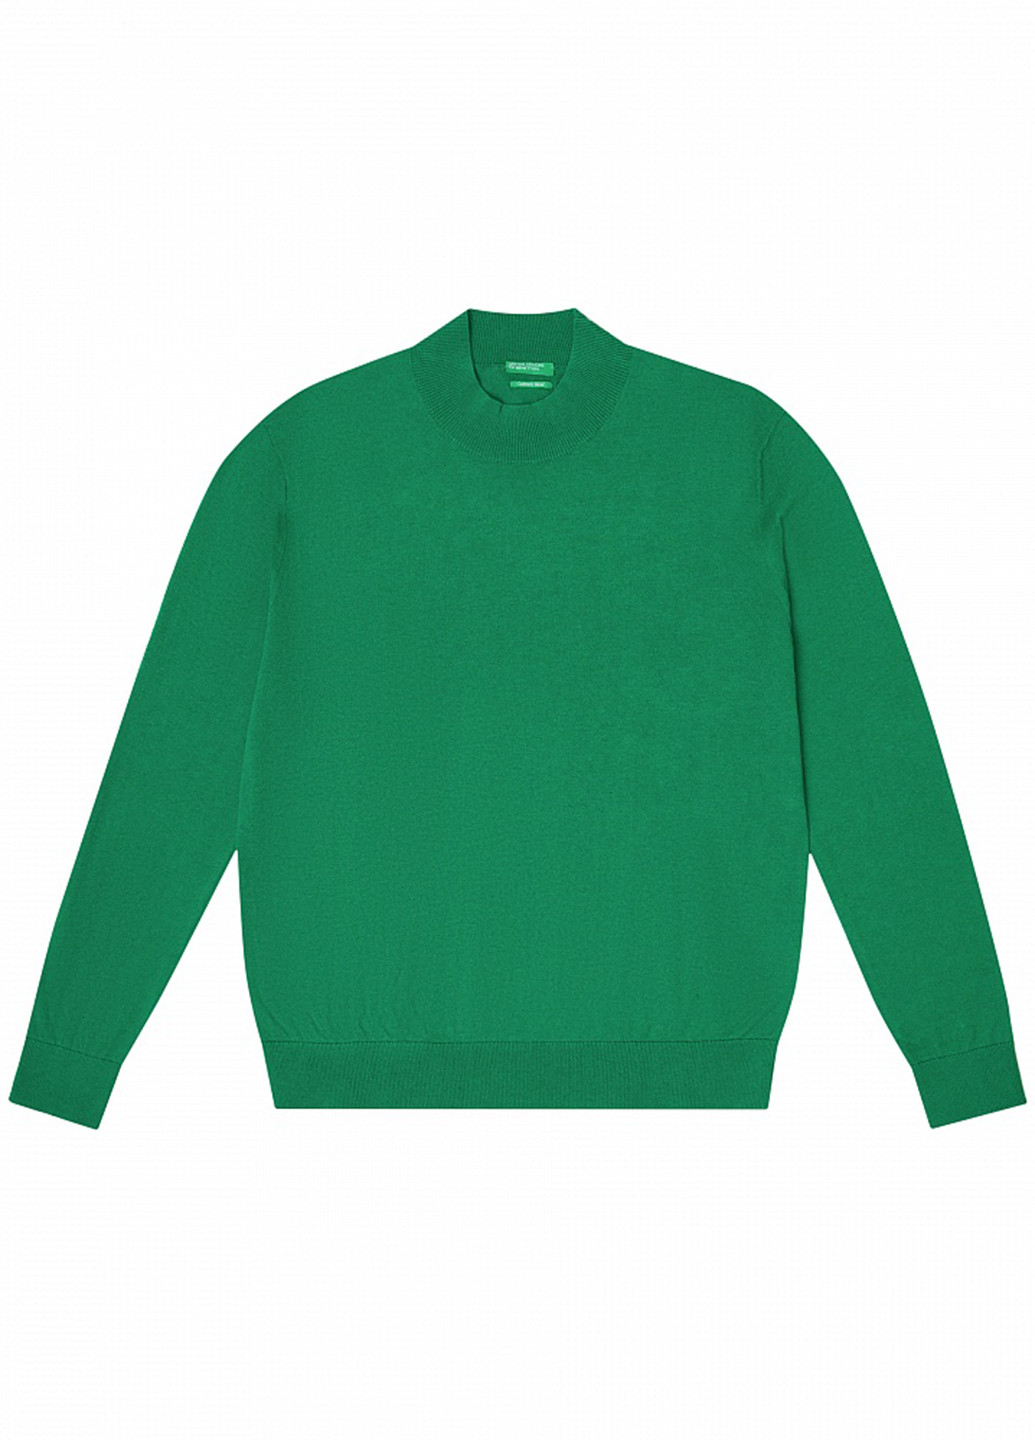 Зеленый демисезонный джемпер джемпер United Colors of Benetton